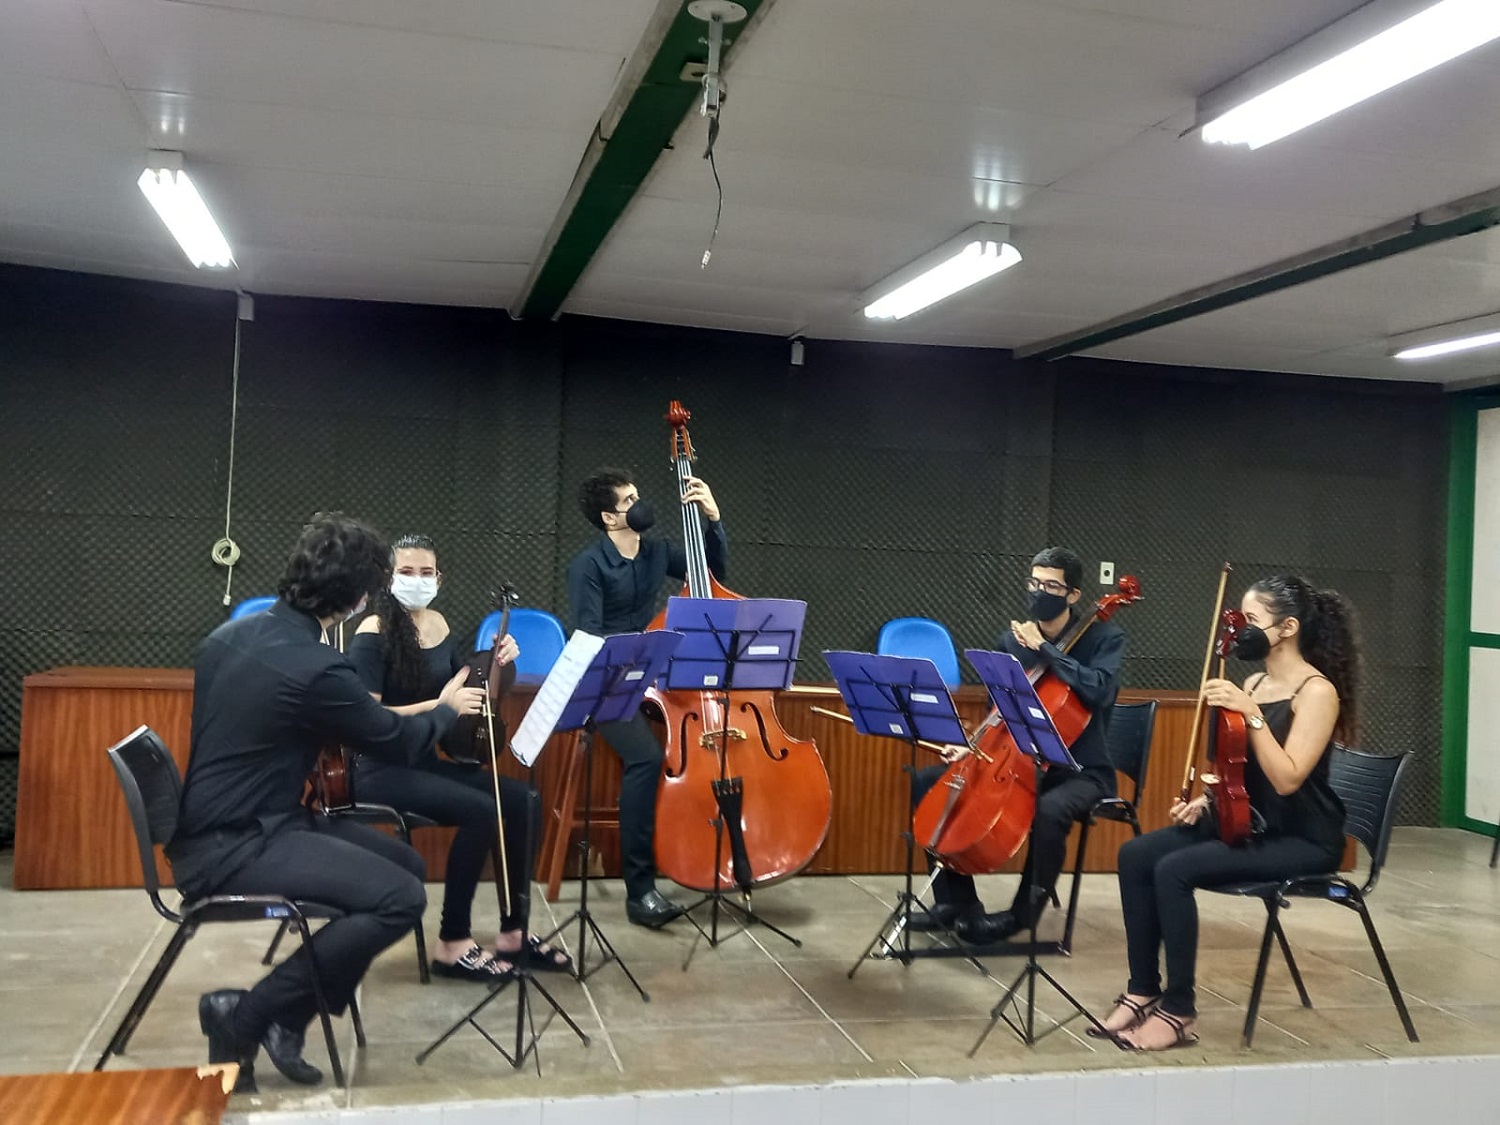  Quinteto de Cordas da Filarmônica de Itabaina encerrou o dia de atividades no campus. (foto: Arquivo pessoal)